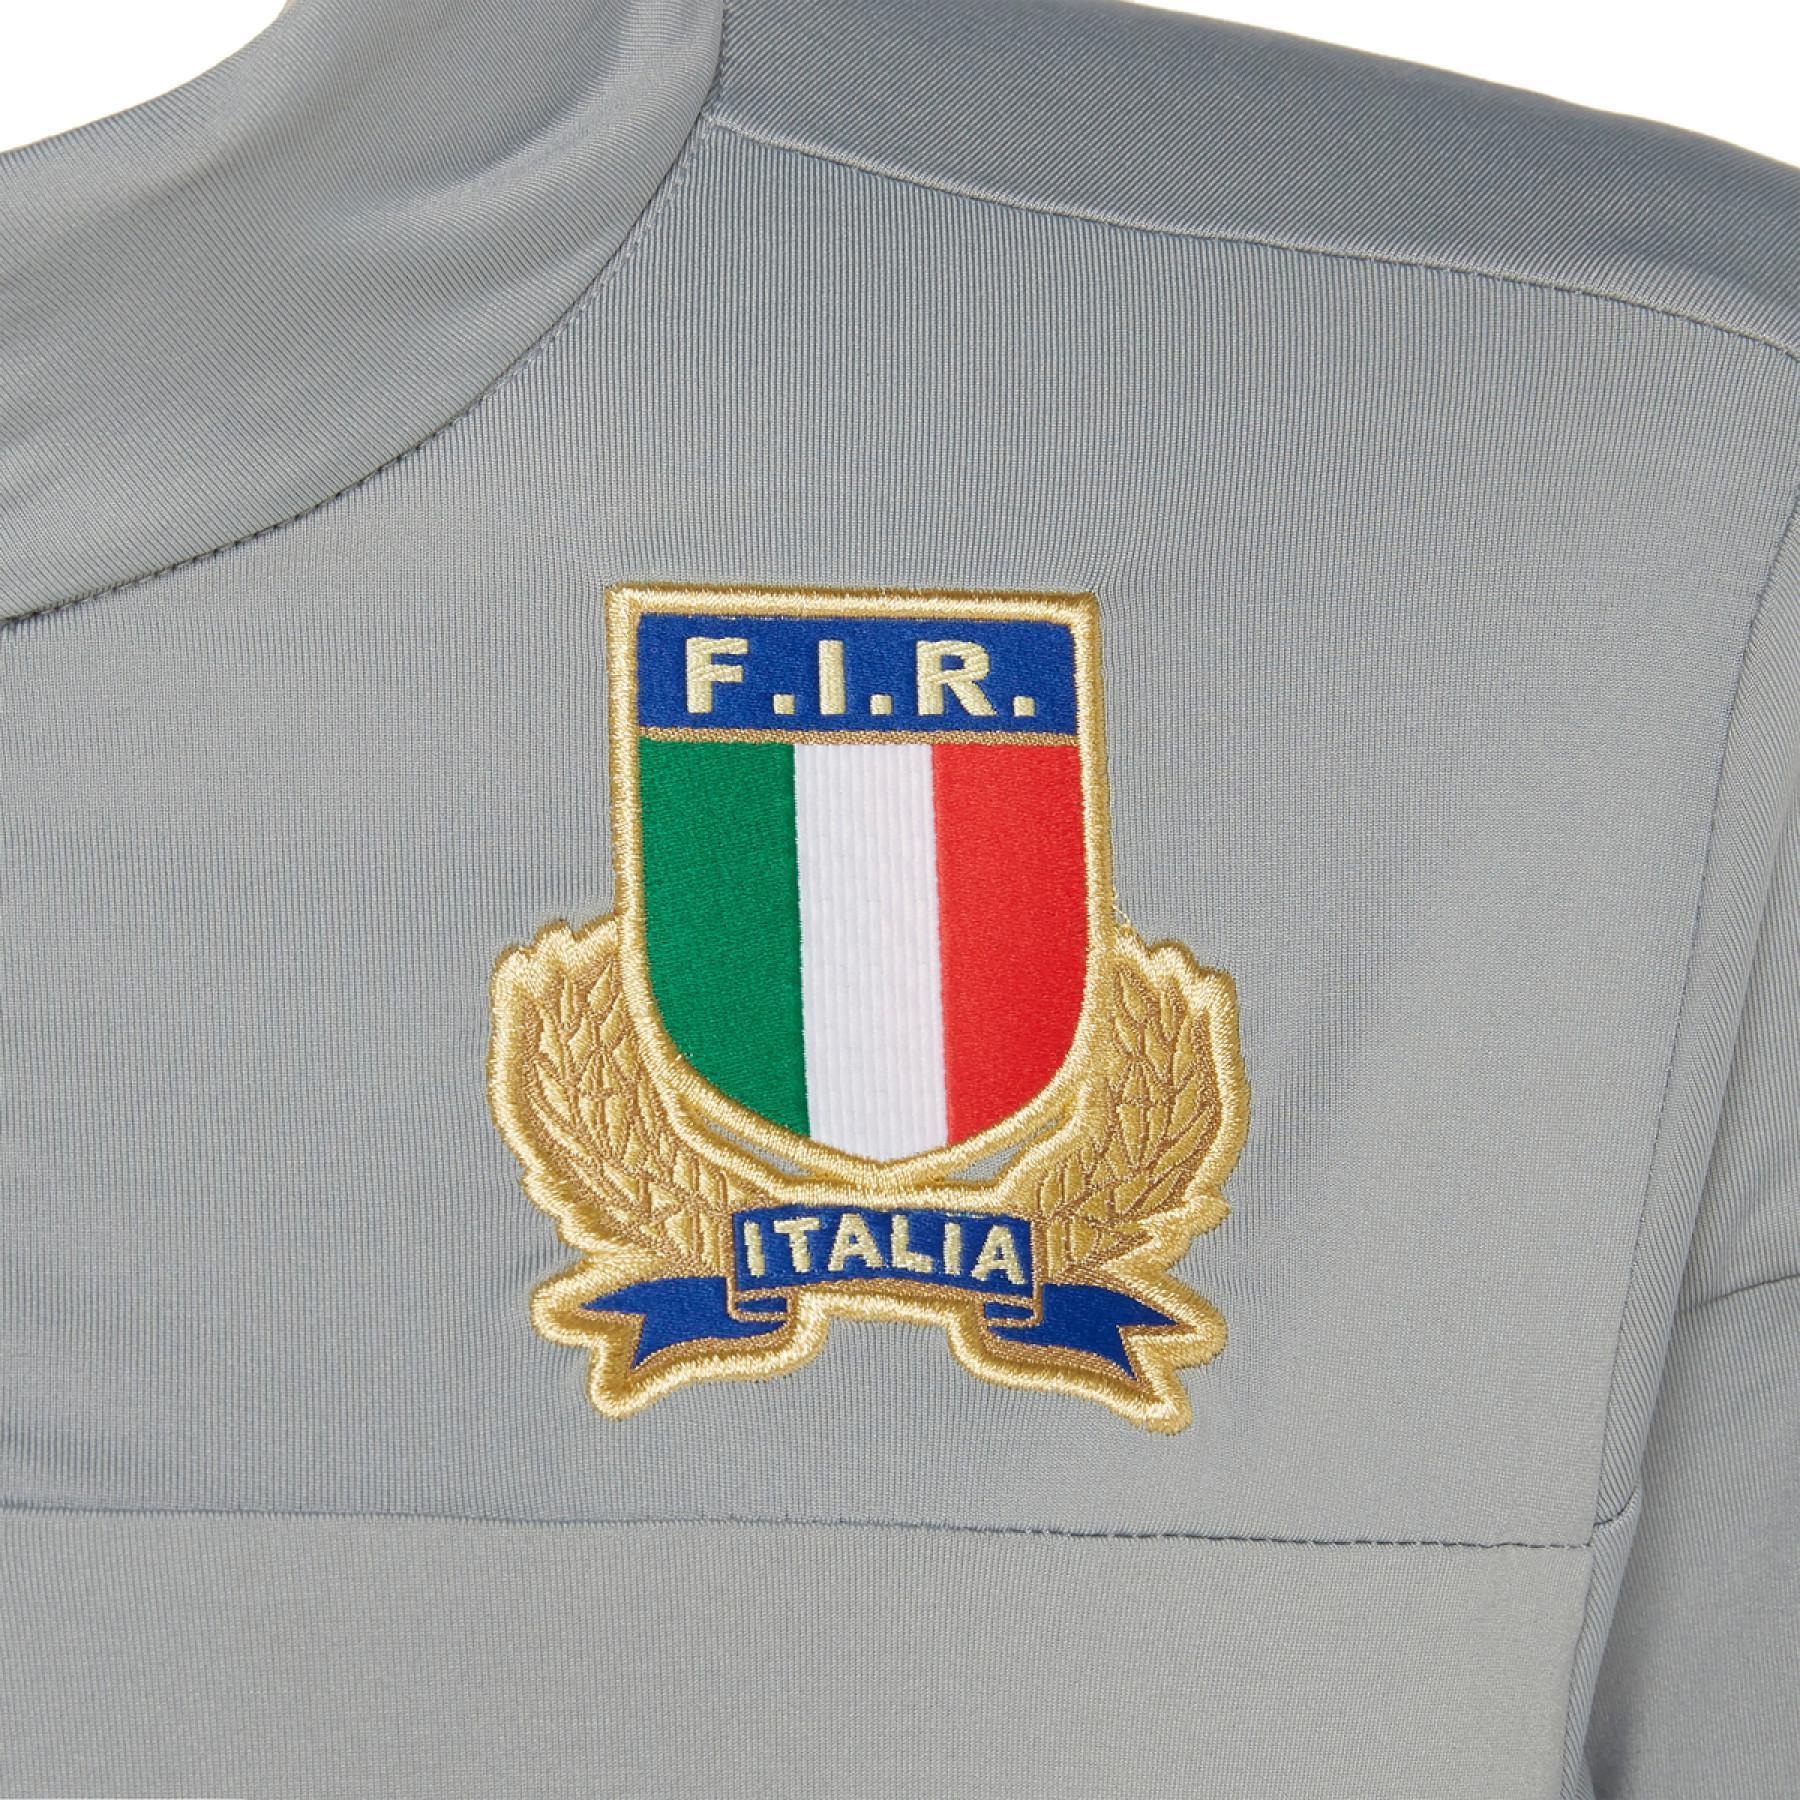 Camisola para crianças Italie rugby 2019